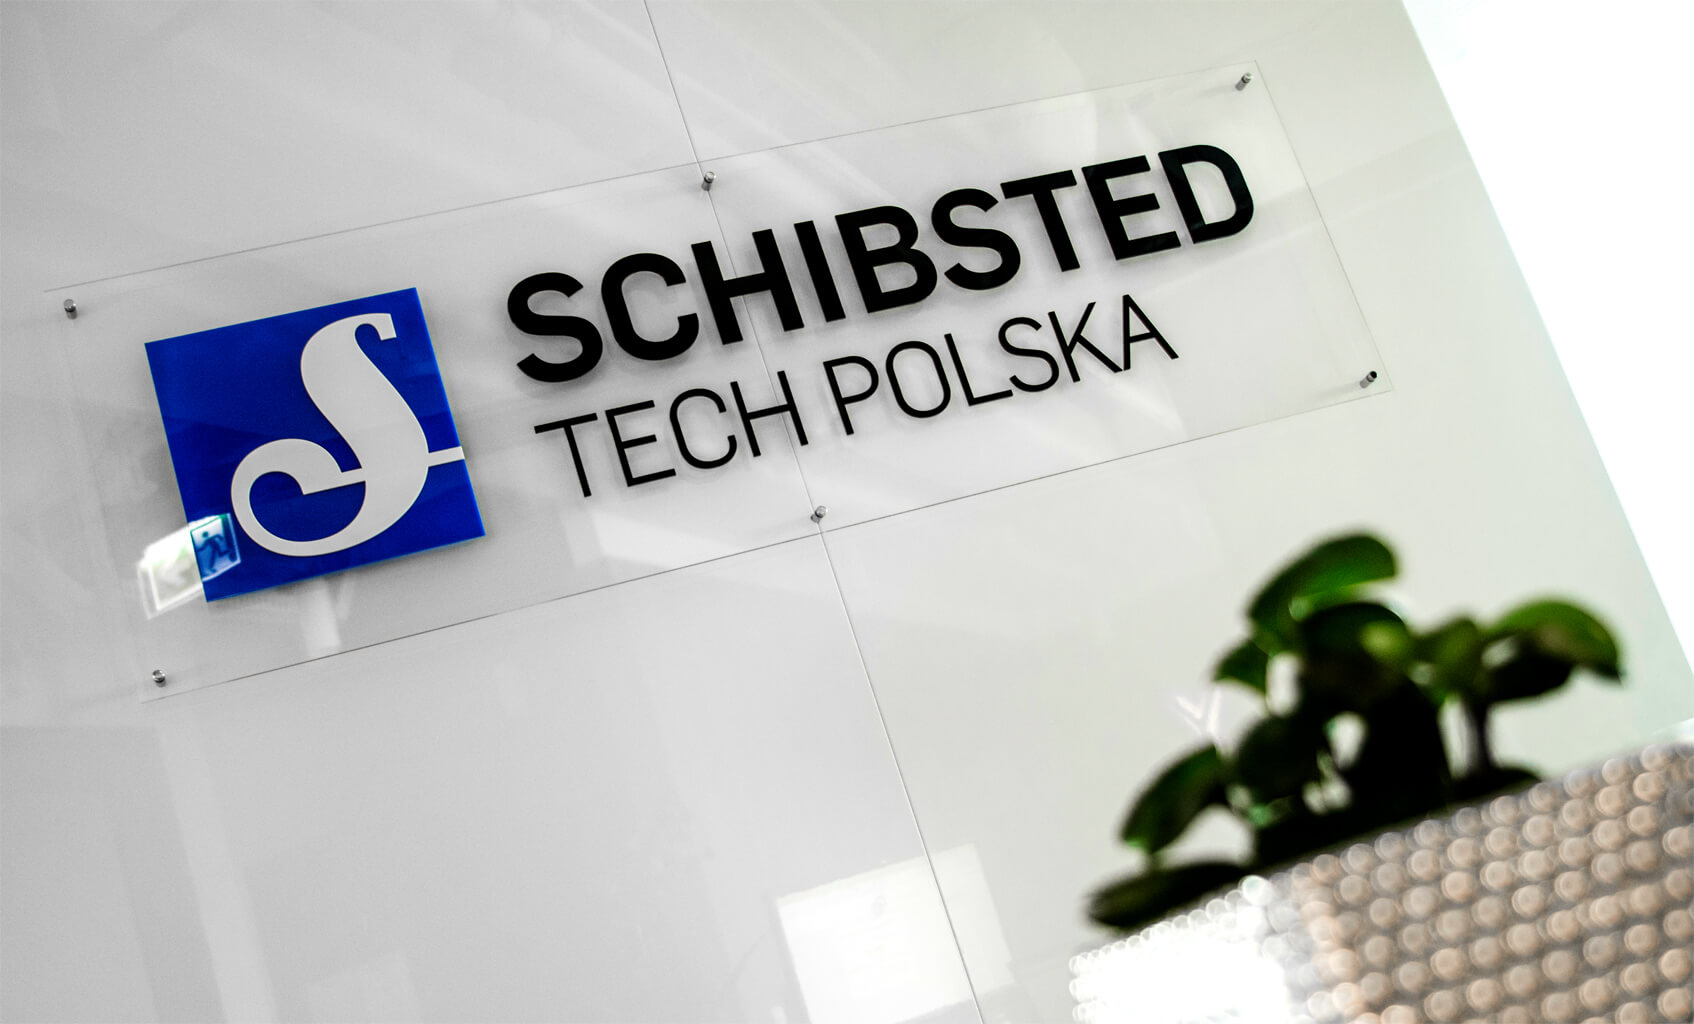 Schibsted Tech Polen - Schibsted Tech Poland - 3D-Logo und 3D-Buchstaben auf Plexiglasunterlage, montiert auf Abstandshaltern im Empfangsbereich